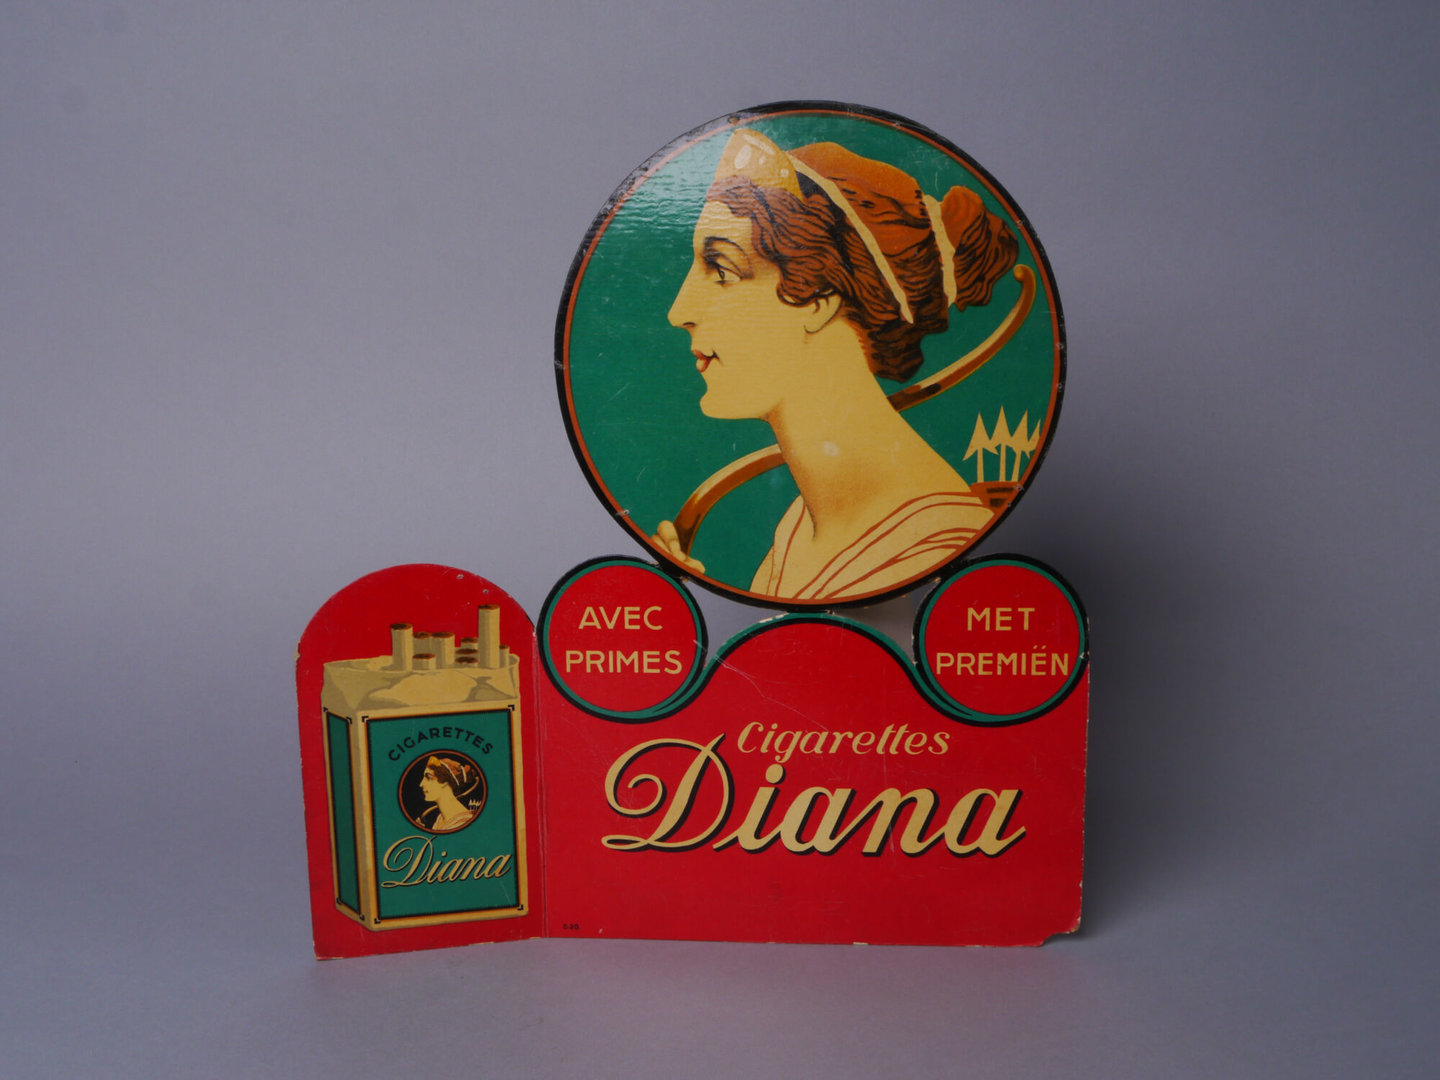 Reclamebord voor sigaretten van het merk Diana